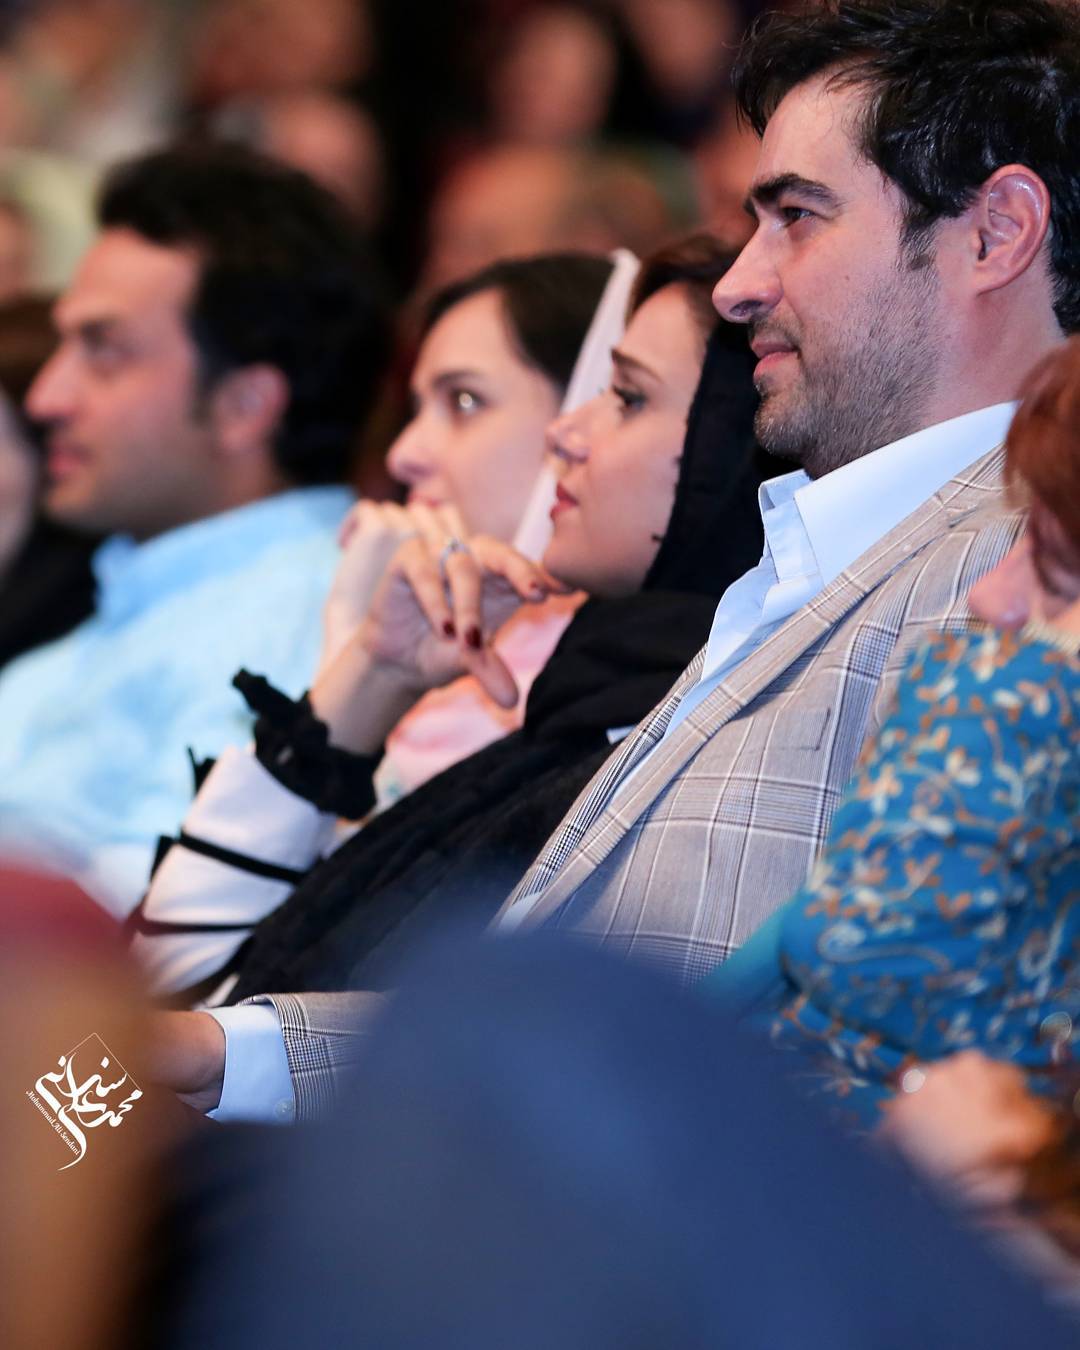 شهاب حسینی در جشن پایان سریال شهرزاد